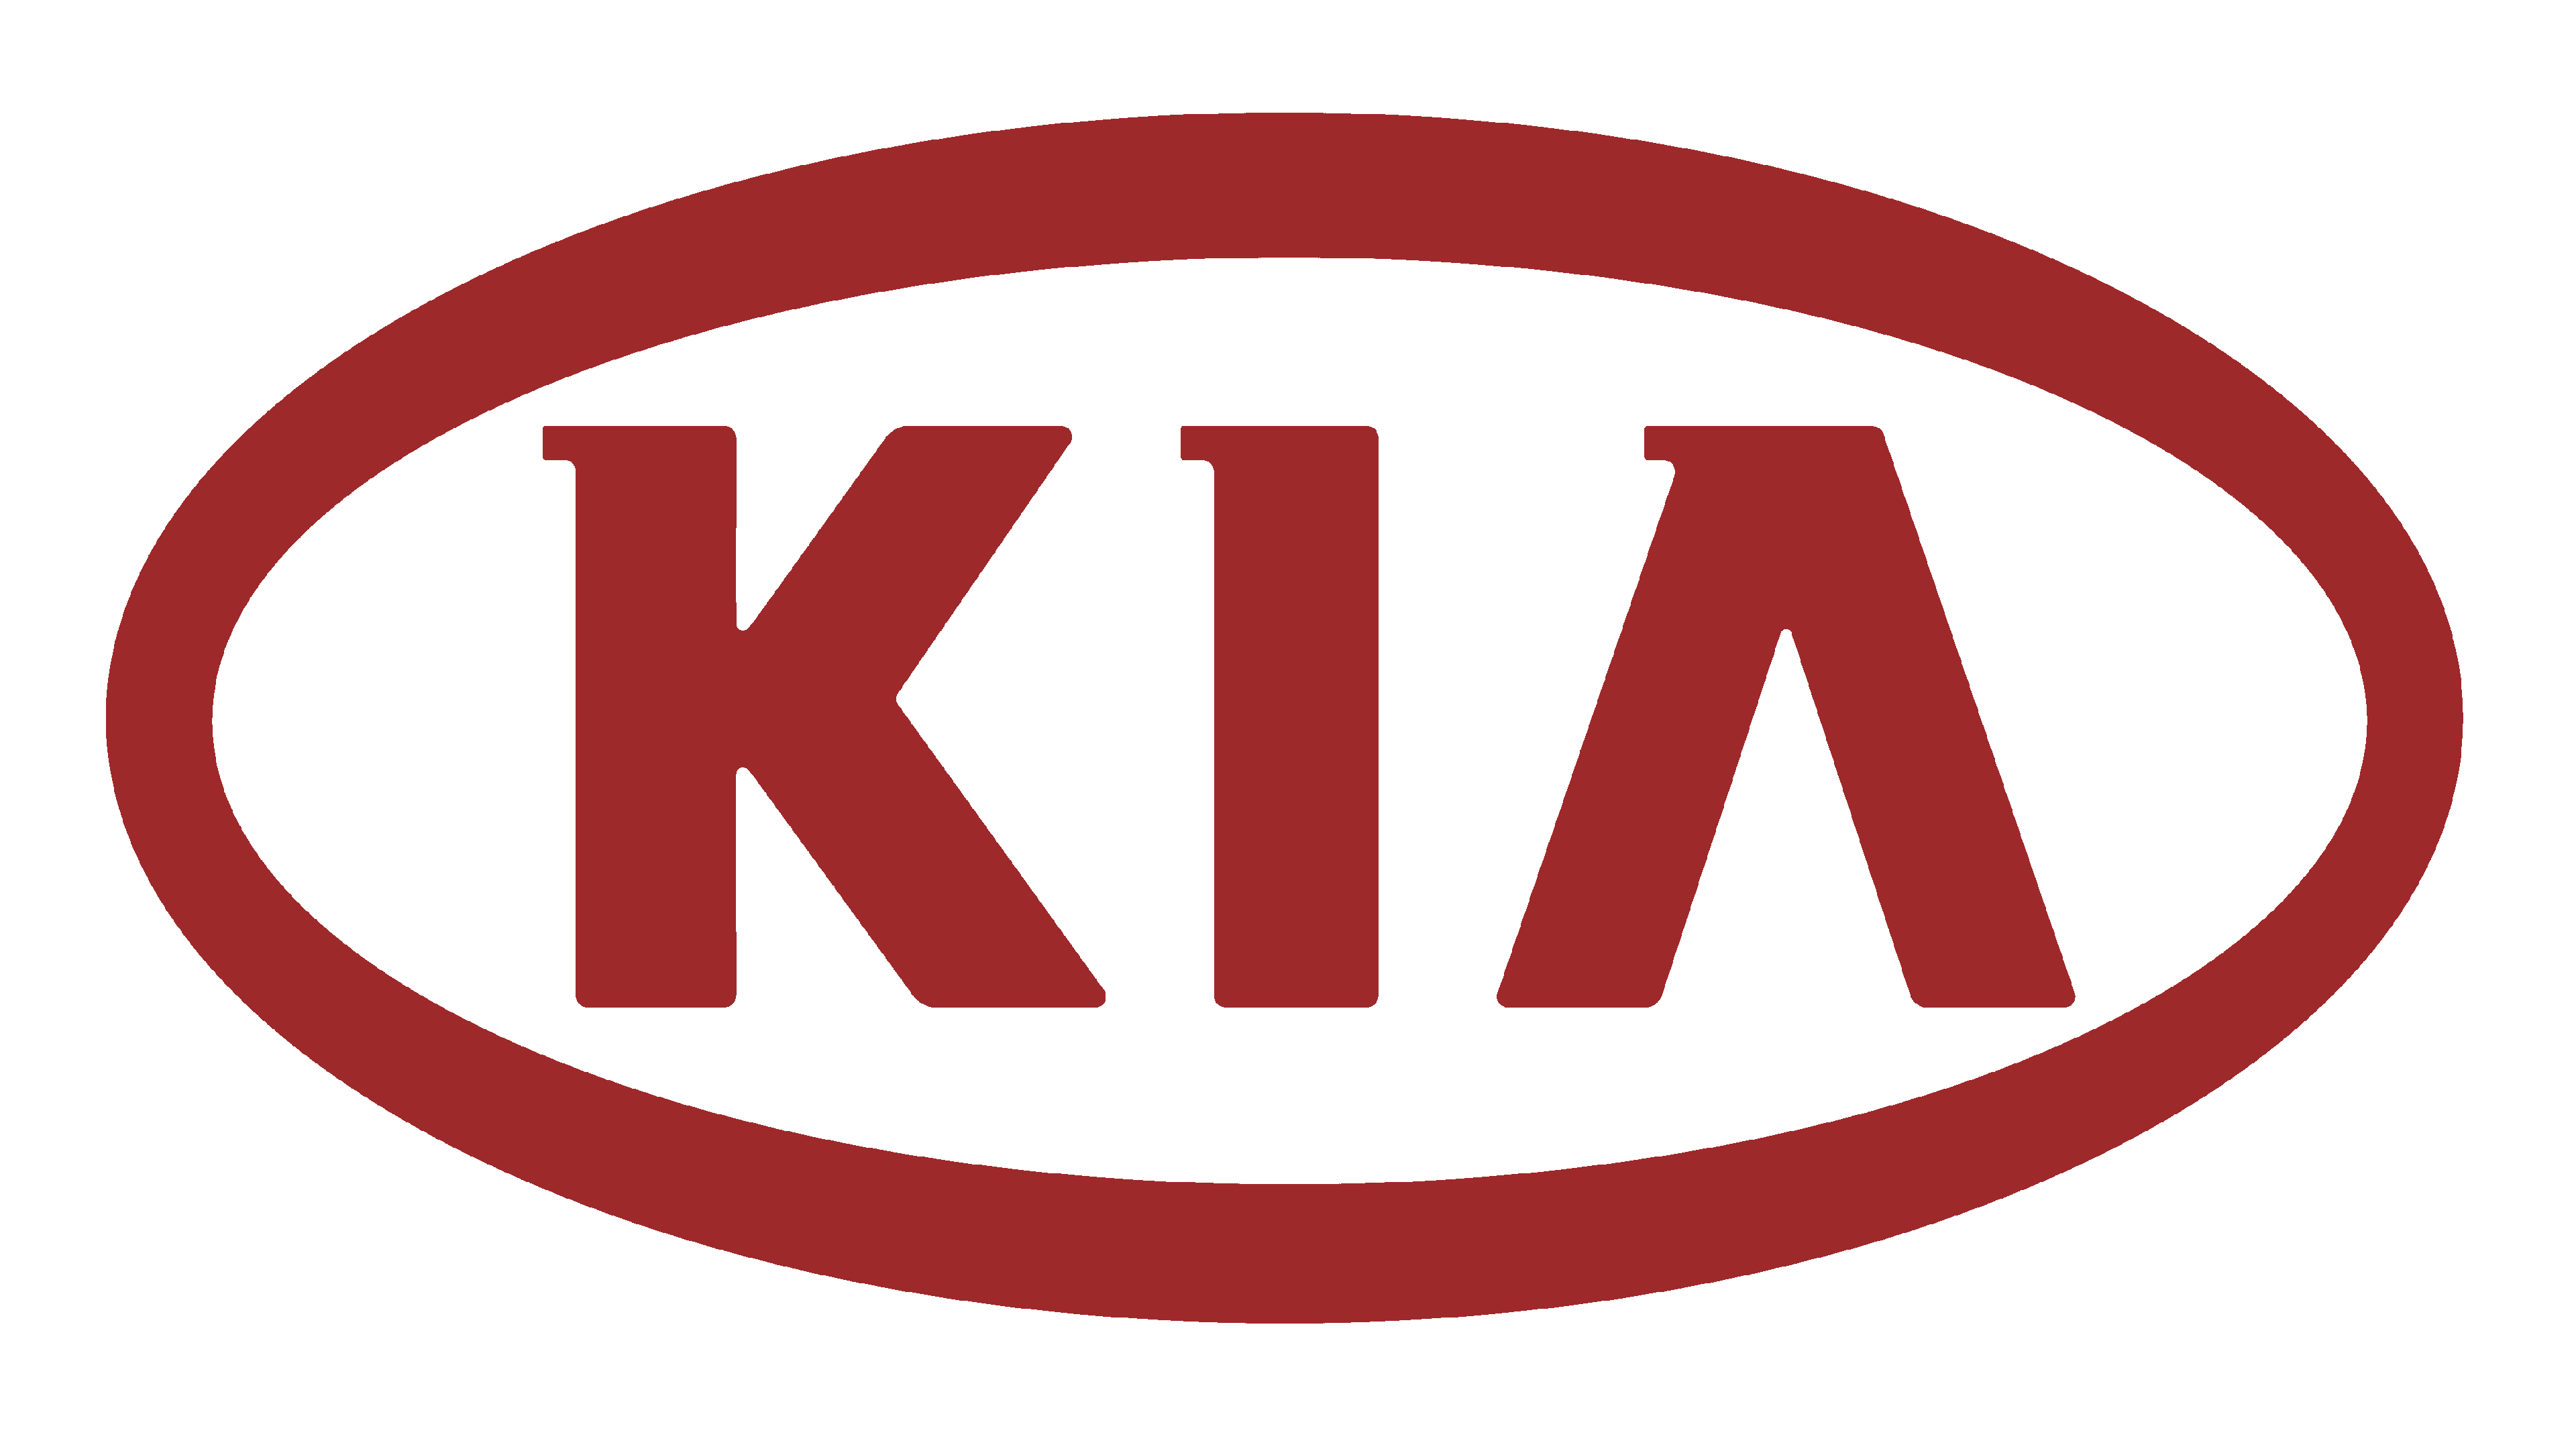 GM, Kia show new logos